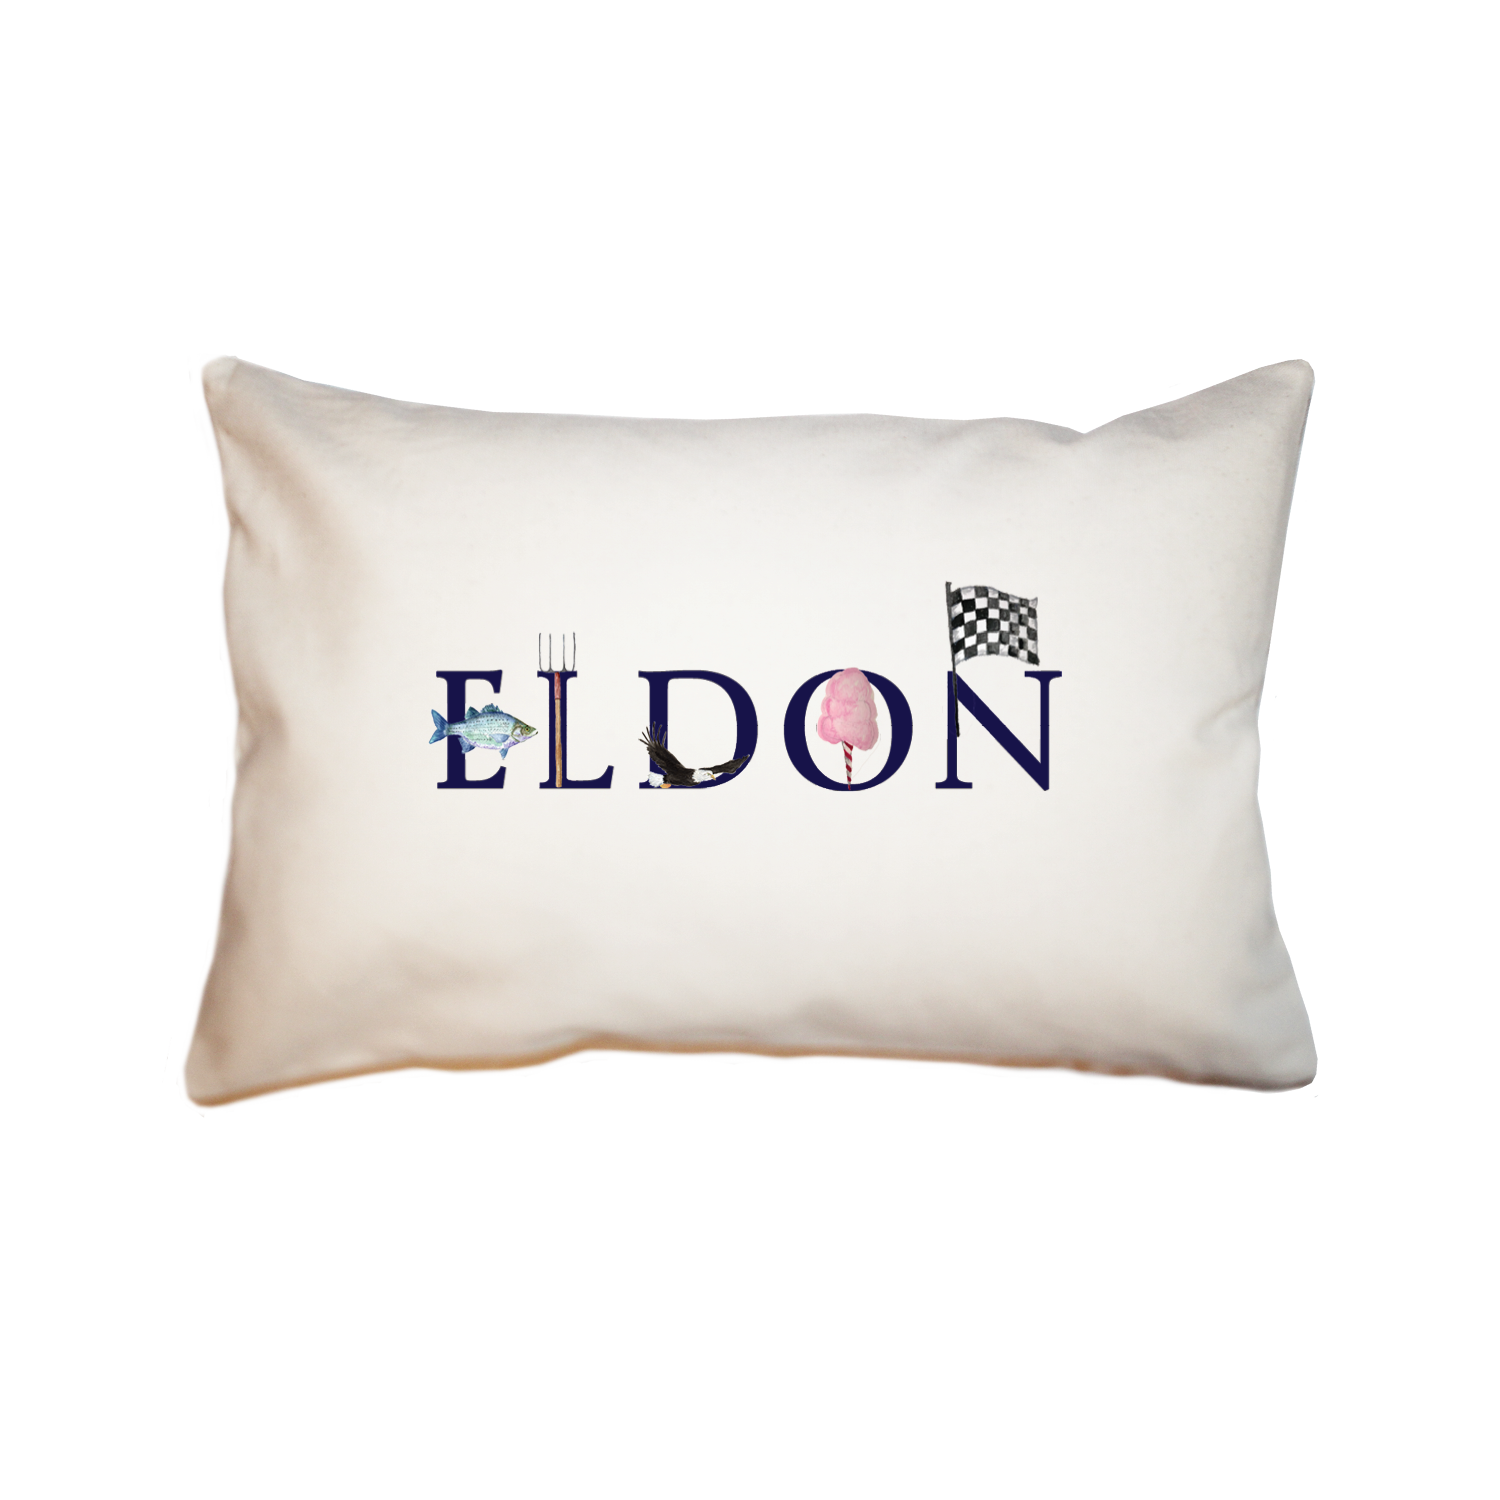 eldon large rectangle pillow